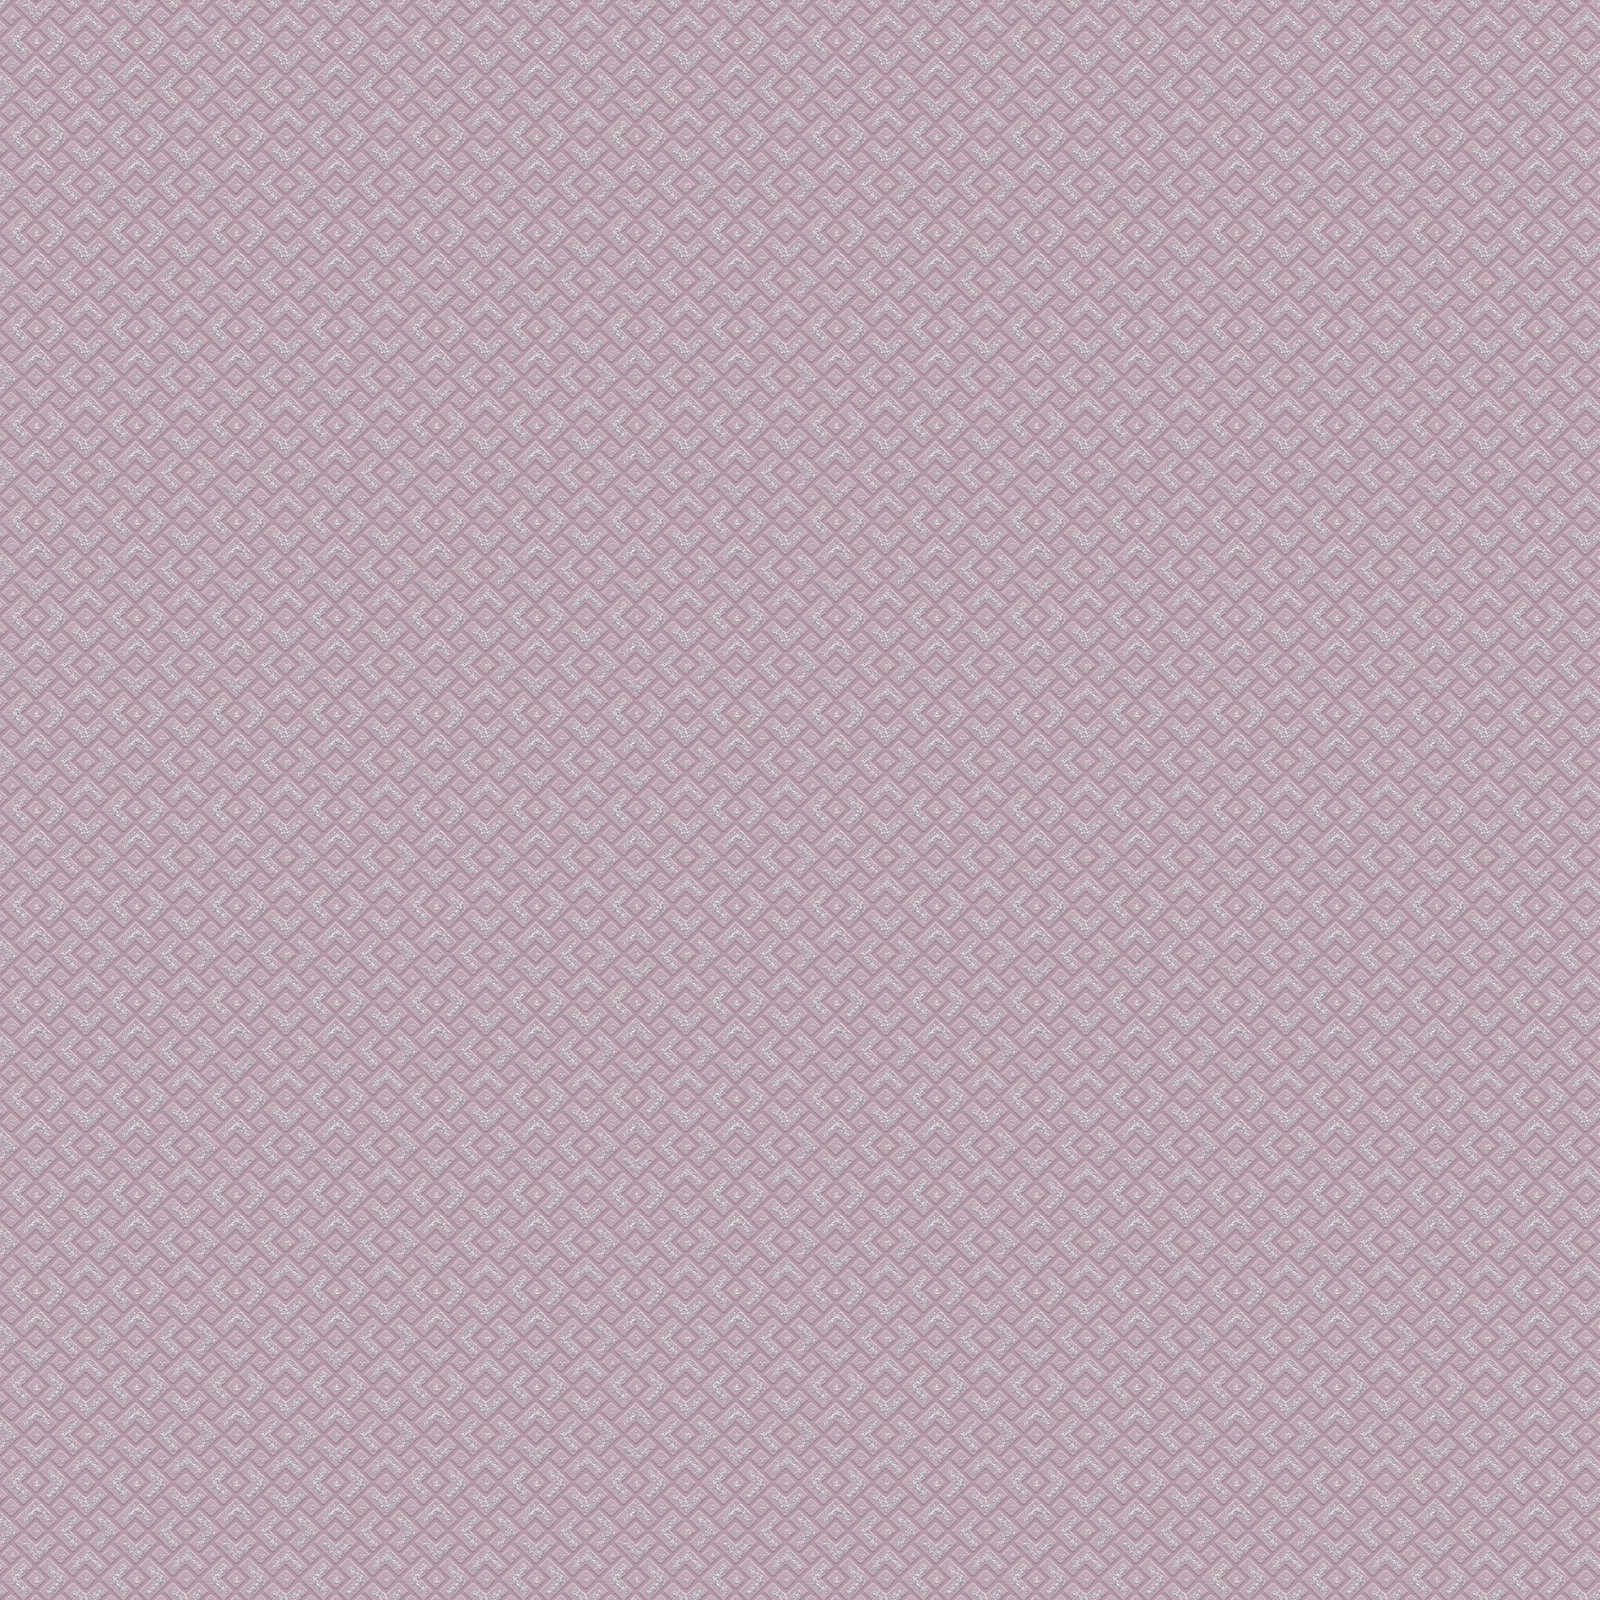 Carta da parati liscia rosa antico con effetto metallizzato - viola
